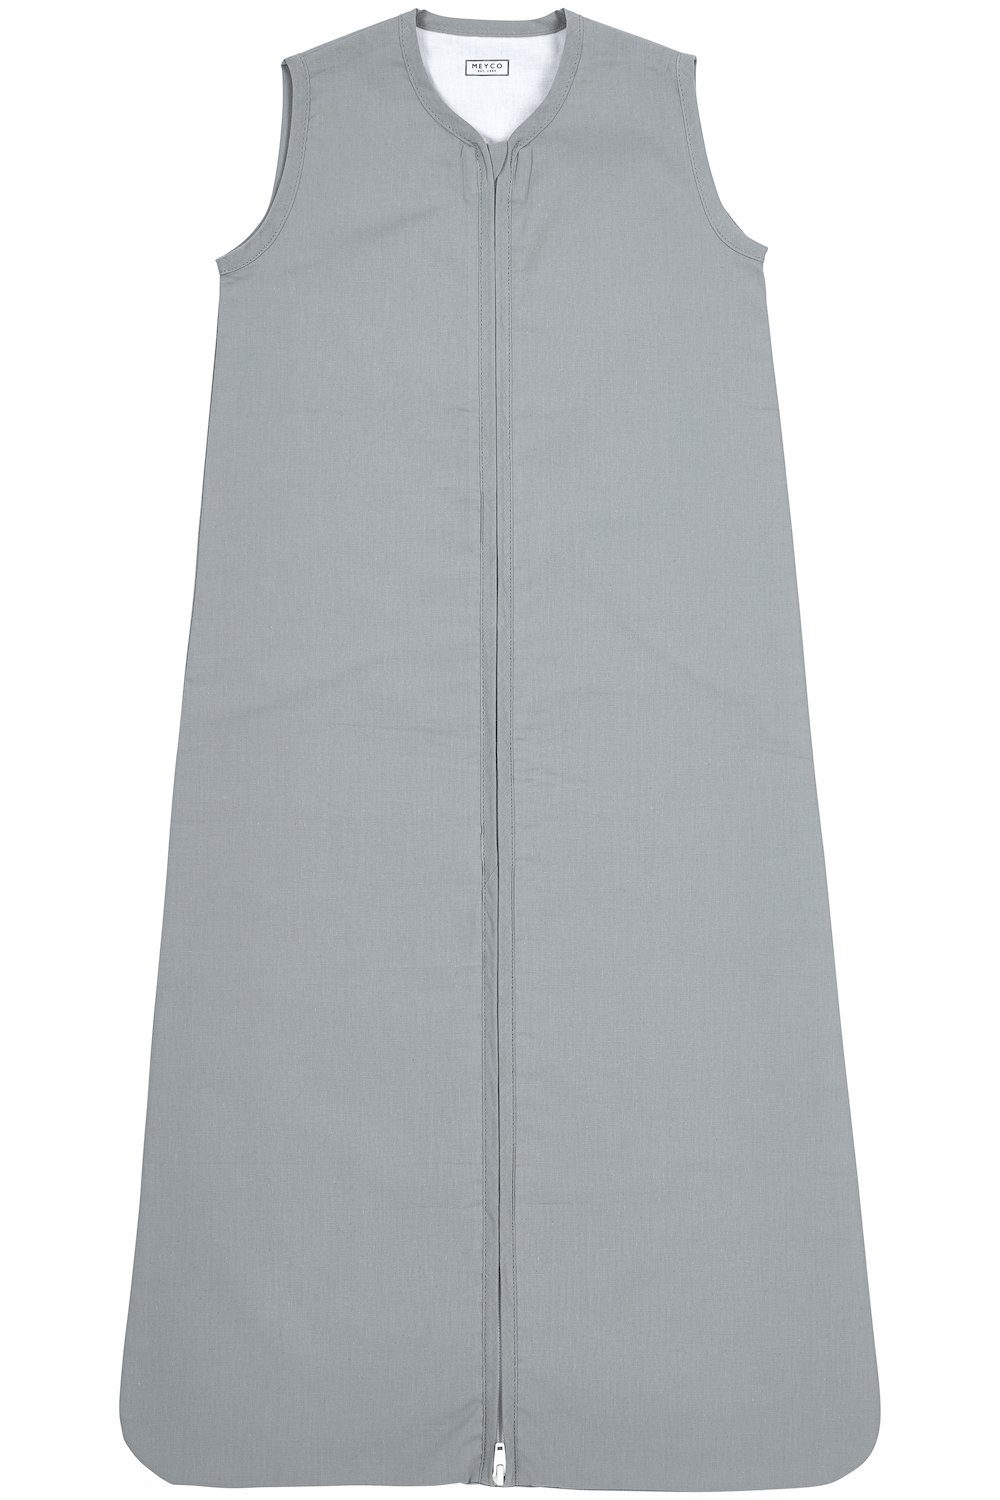 Meyco Baby Babyschlafsack Uni Grey (1 tlg), 70cm | Schlafsäcke